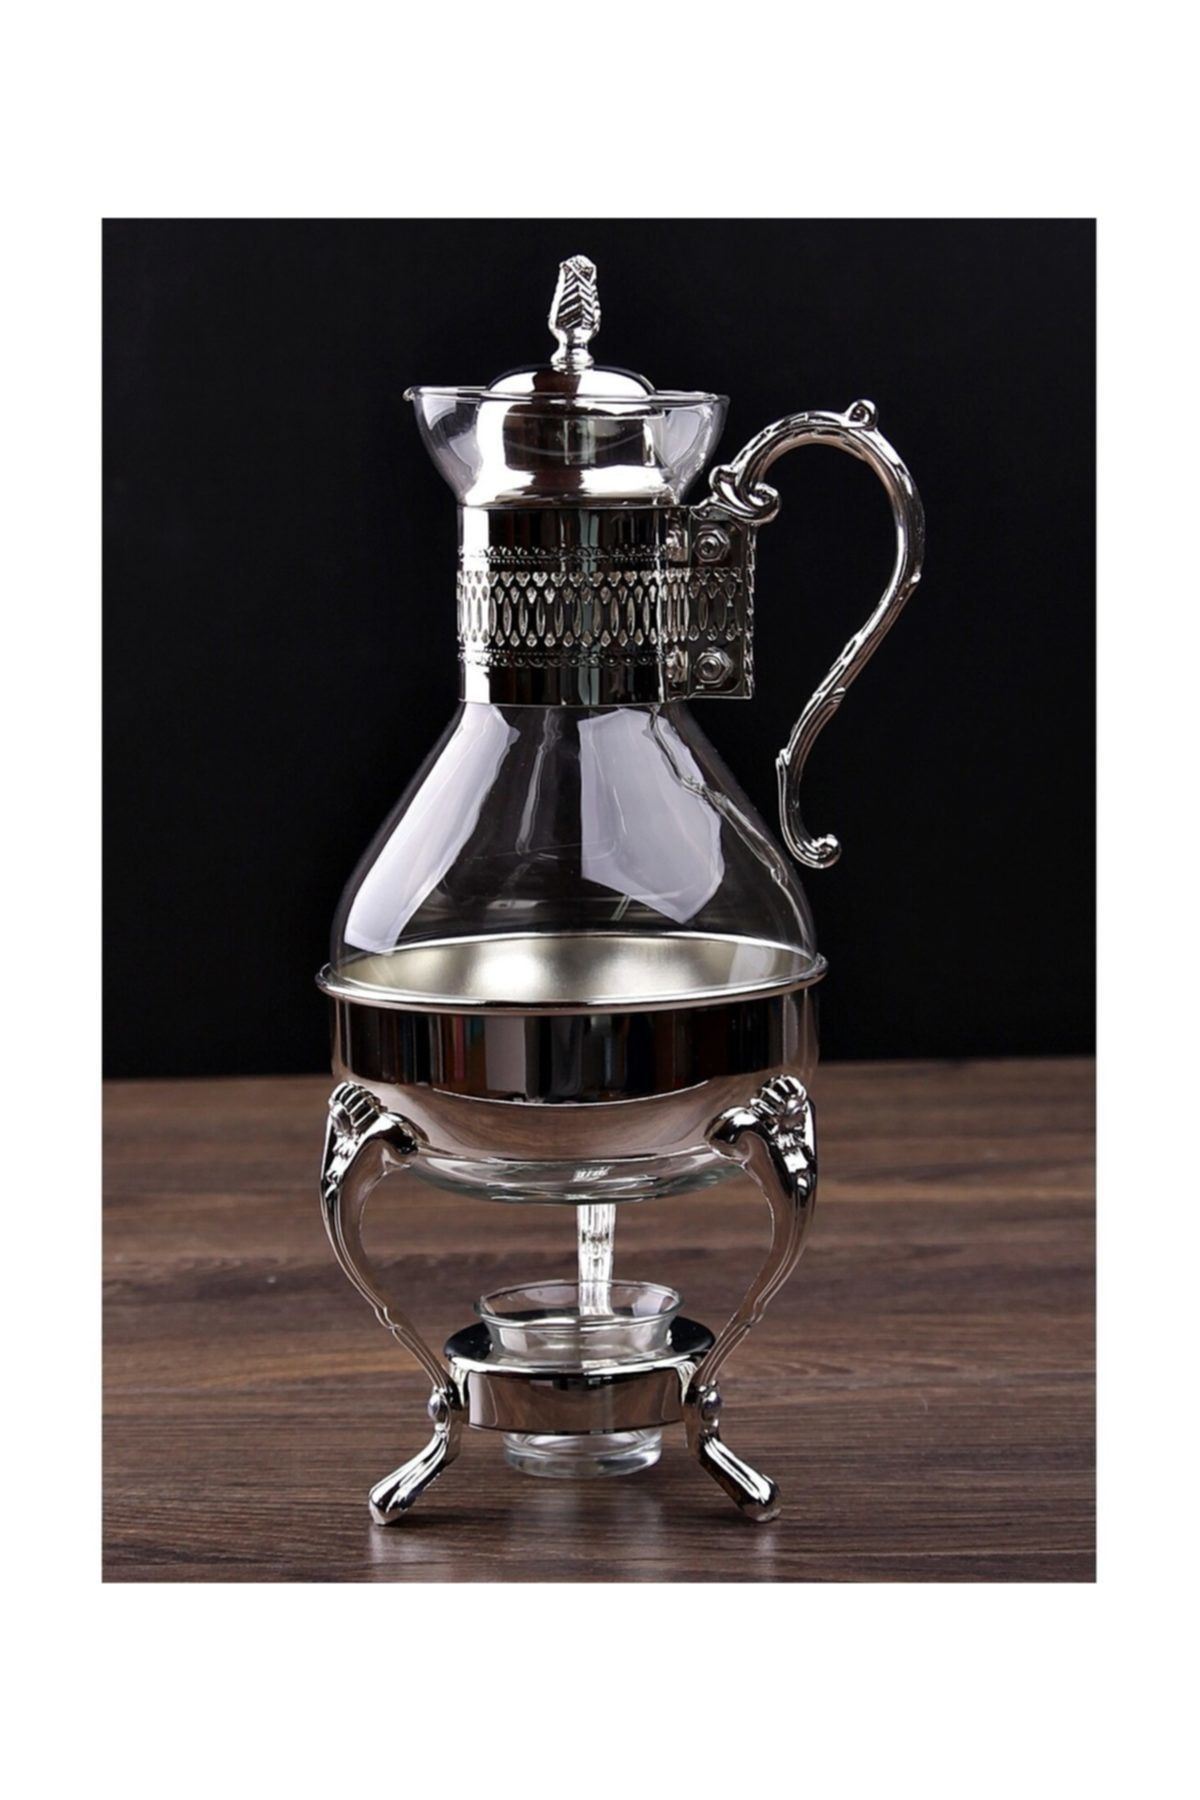 panayır Cam Metal Gümüş Işlemeli Cam Çaydanlık Semaver El Yapımı Işlemeli Alttan Mumlu Isıtıcılı Fondü